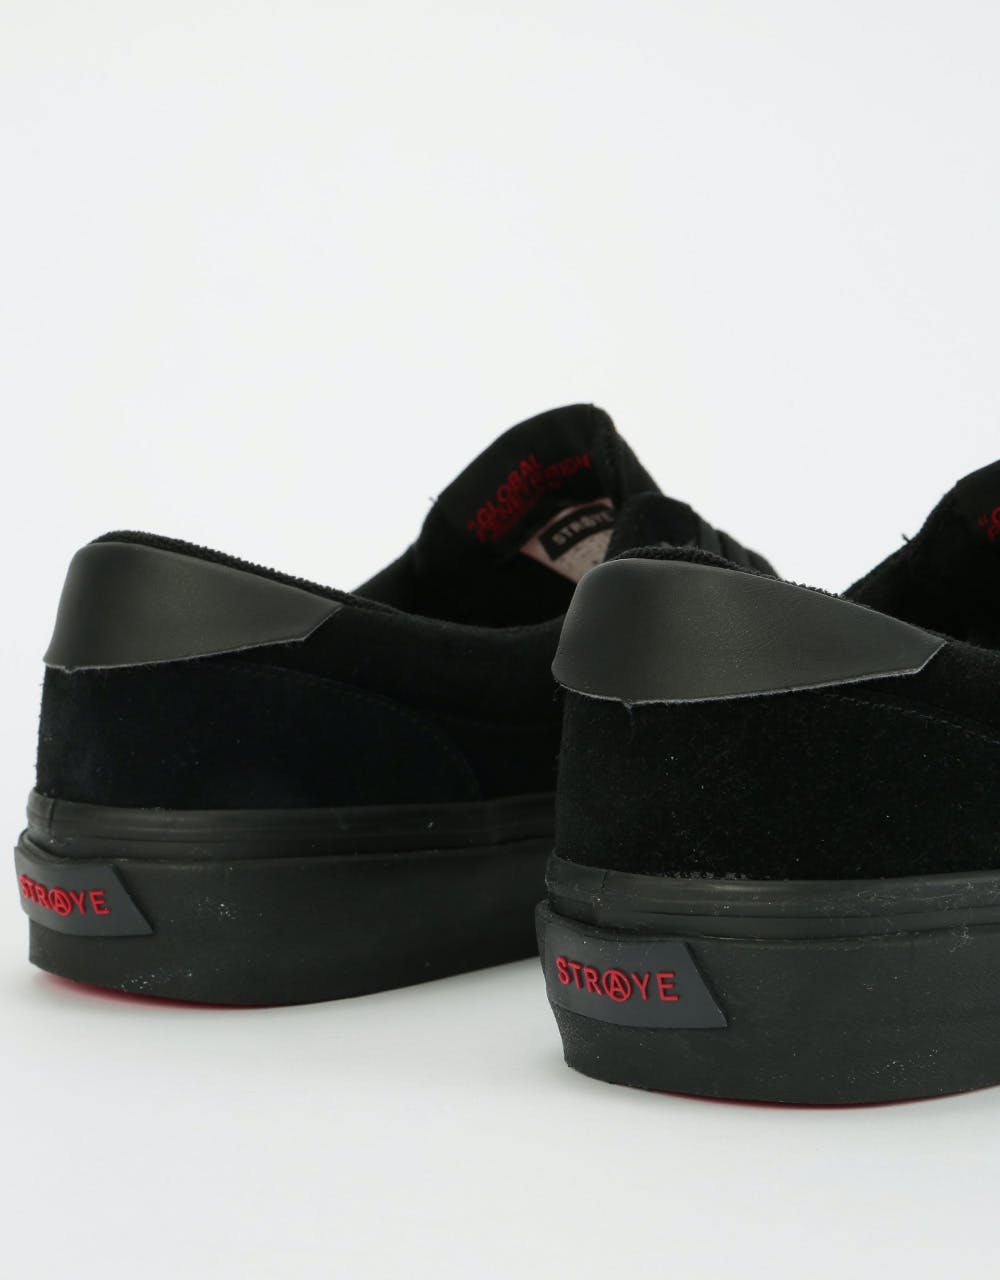 Straye Fairfax Skate Shoes - Black Flame